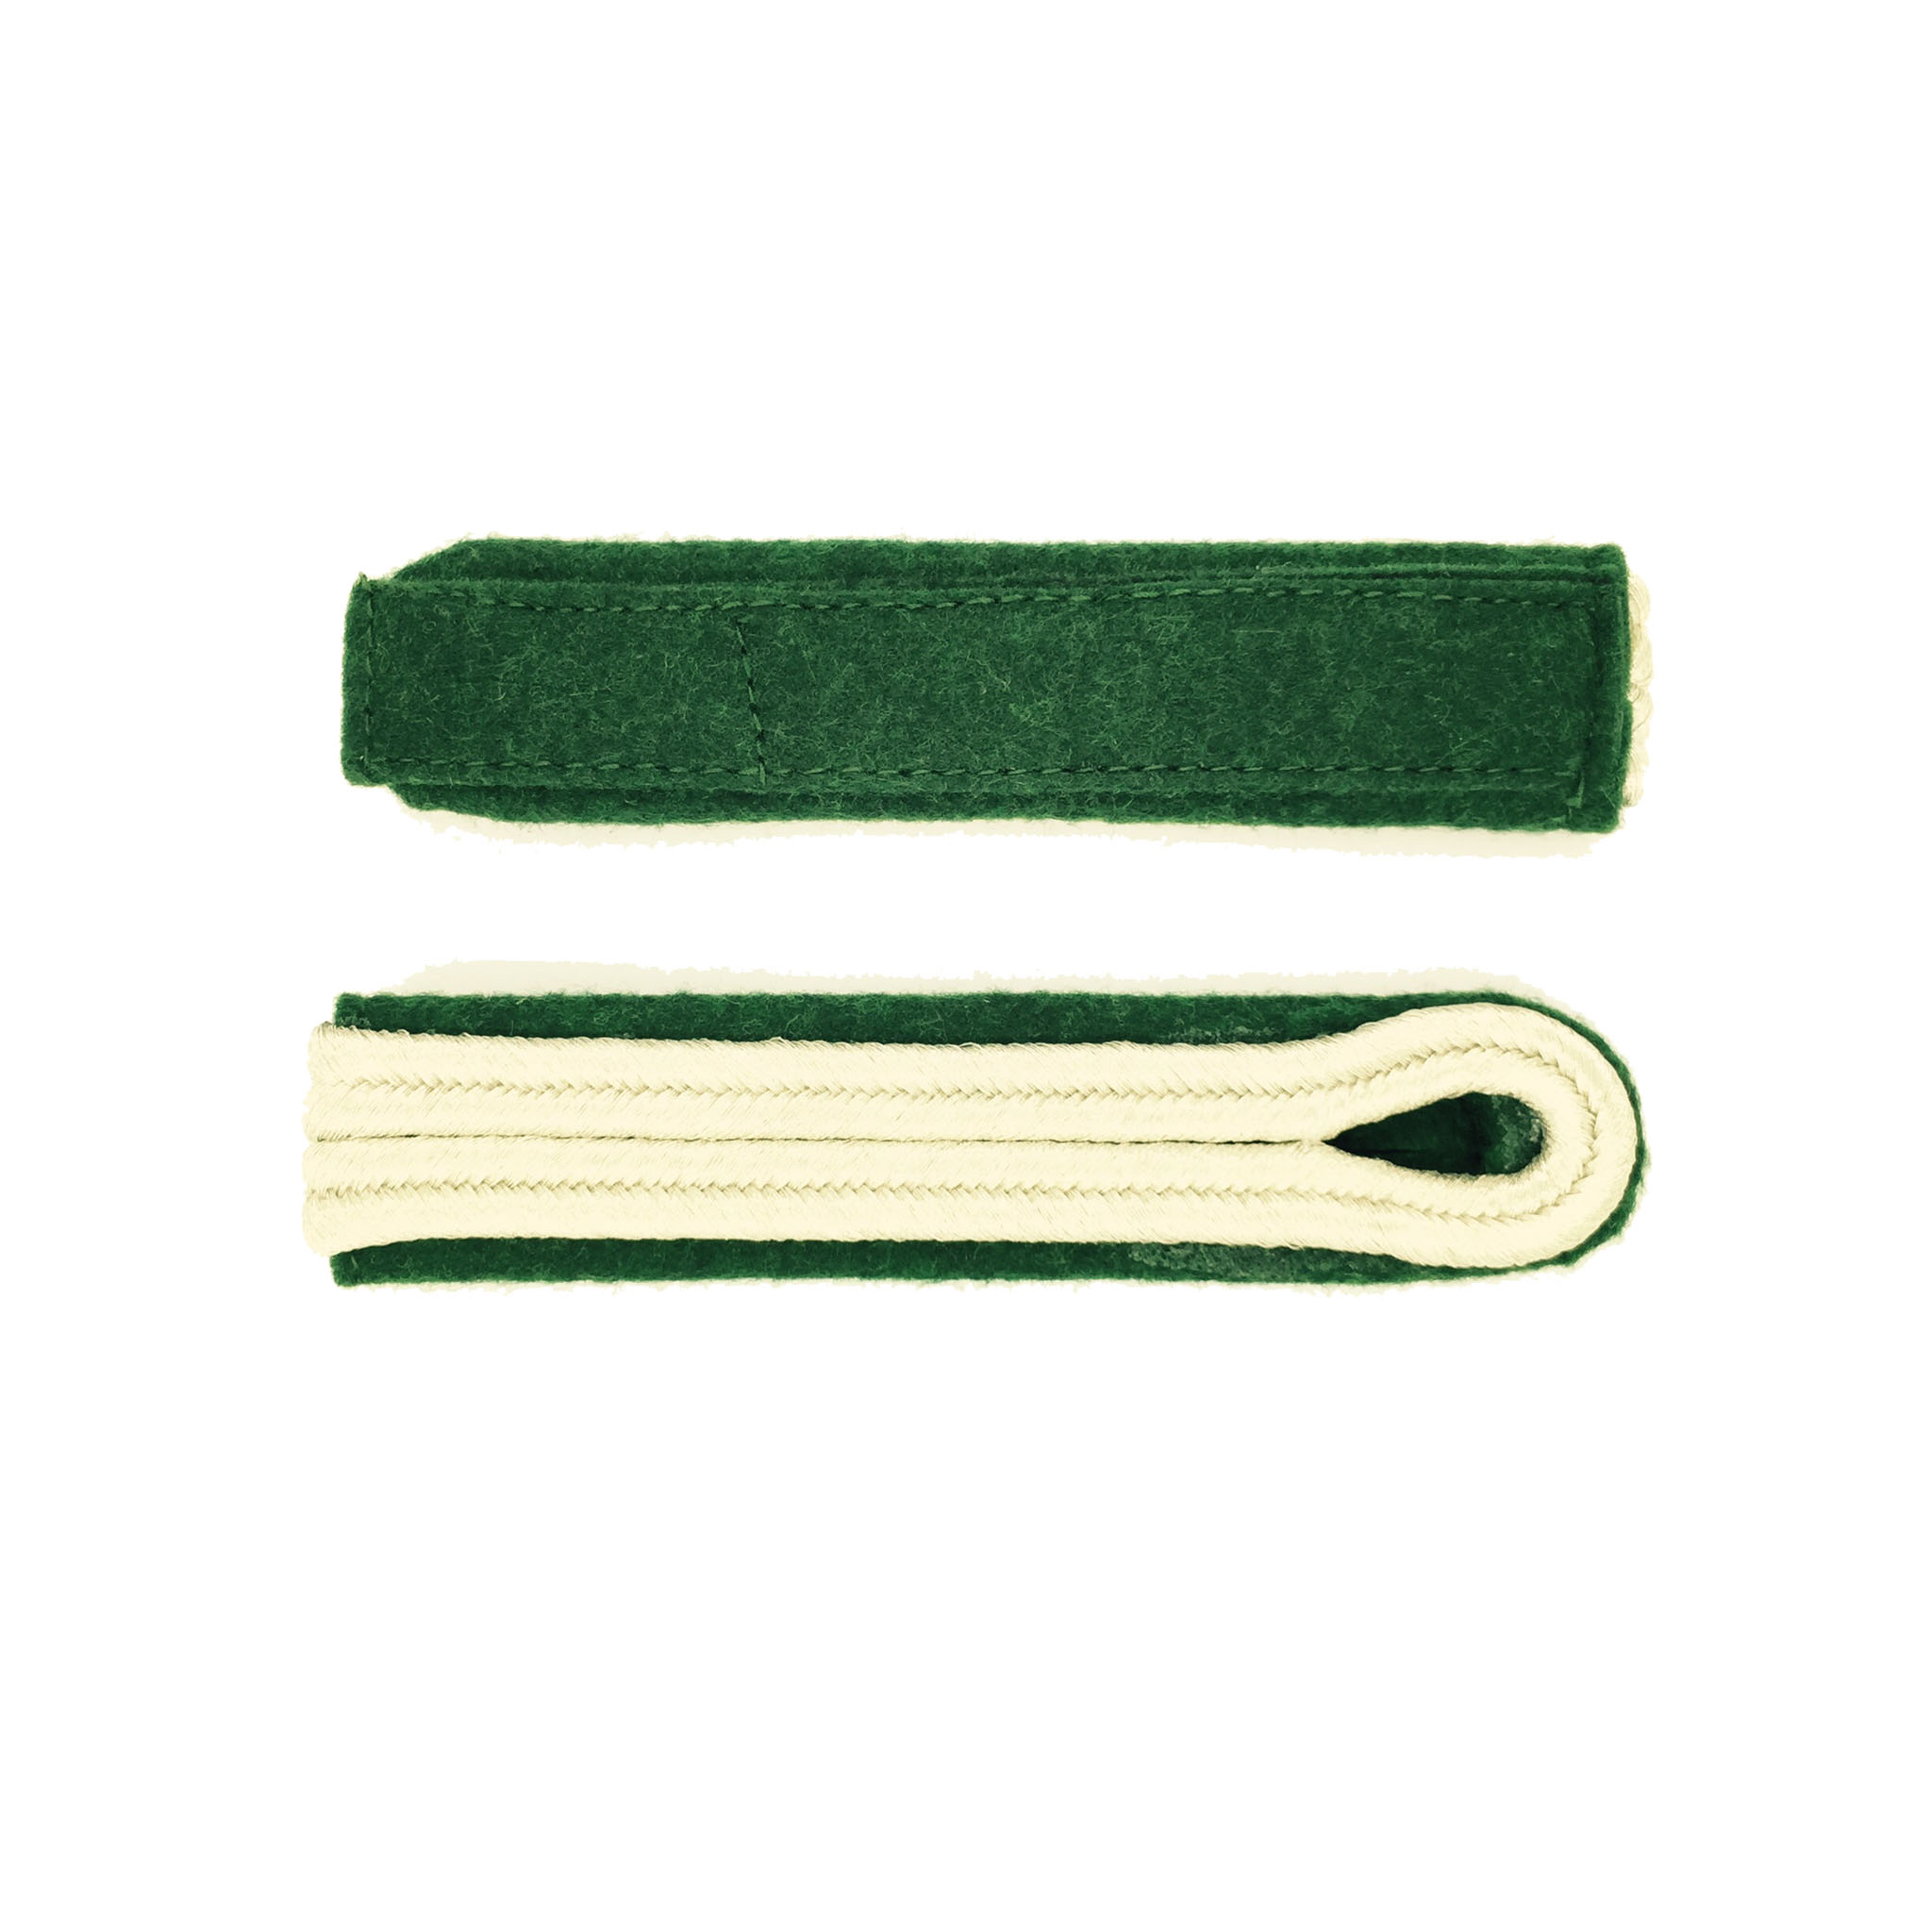 Schulterstücke zweistreifig silber auf grün